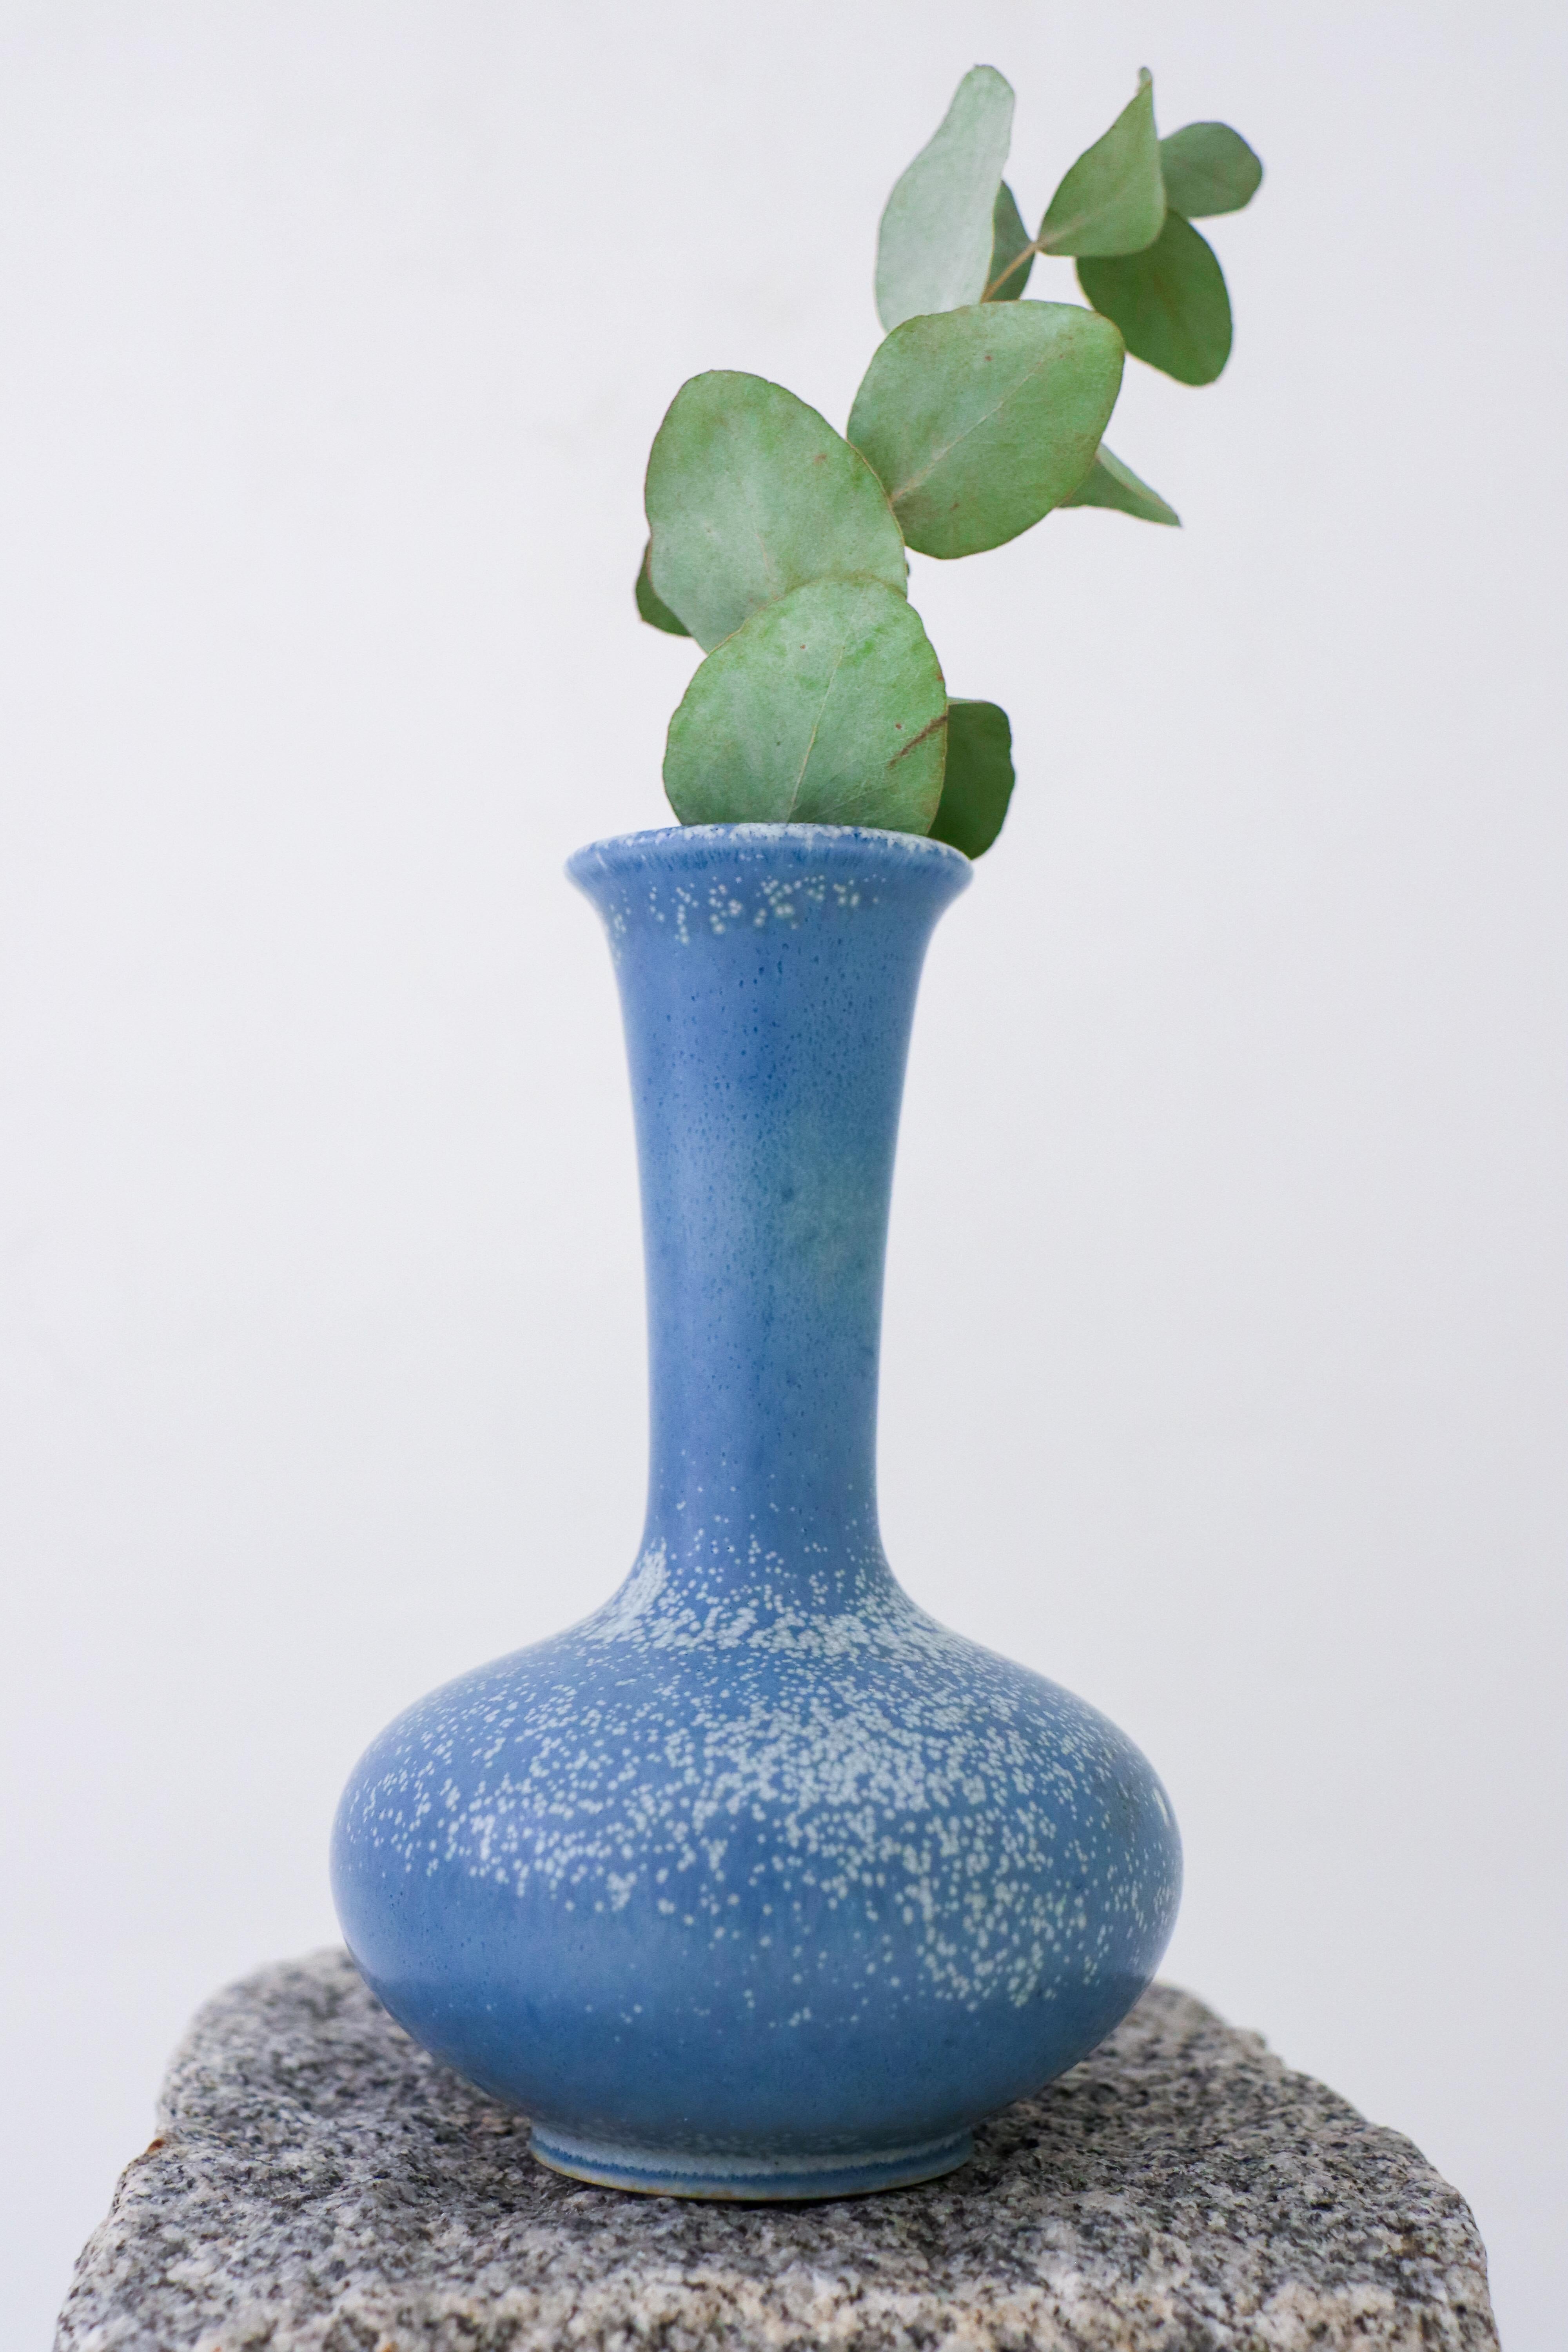 Vase en céramique bleue mouchetée, conçu par Gunnar Nylund chez Rörstrand. Il mesure 16 cm de haut et est en excellent état. Le vase est marqué comme le montre la photo et il est marqué comme étant de 1ère qualité. 

Gunnar Nylund est né à Paris